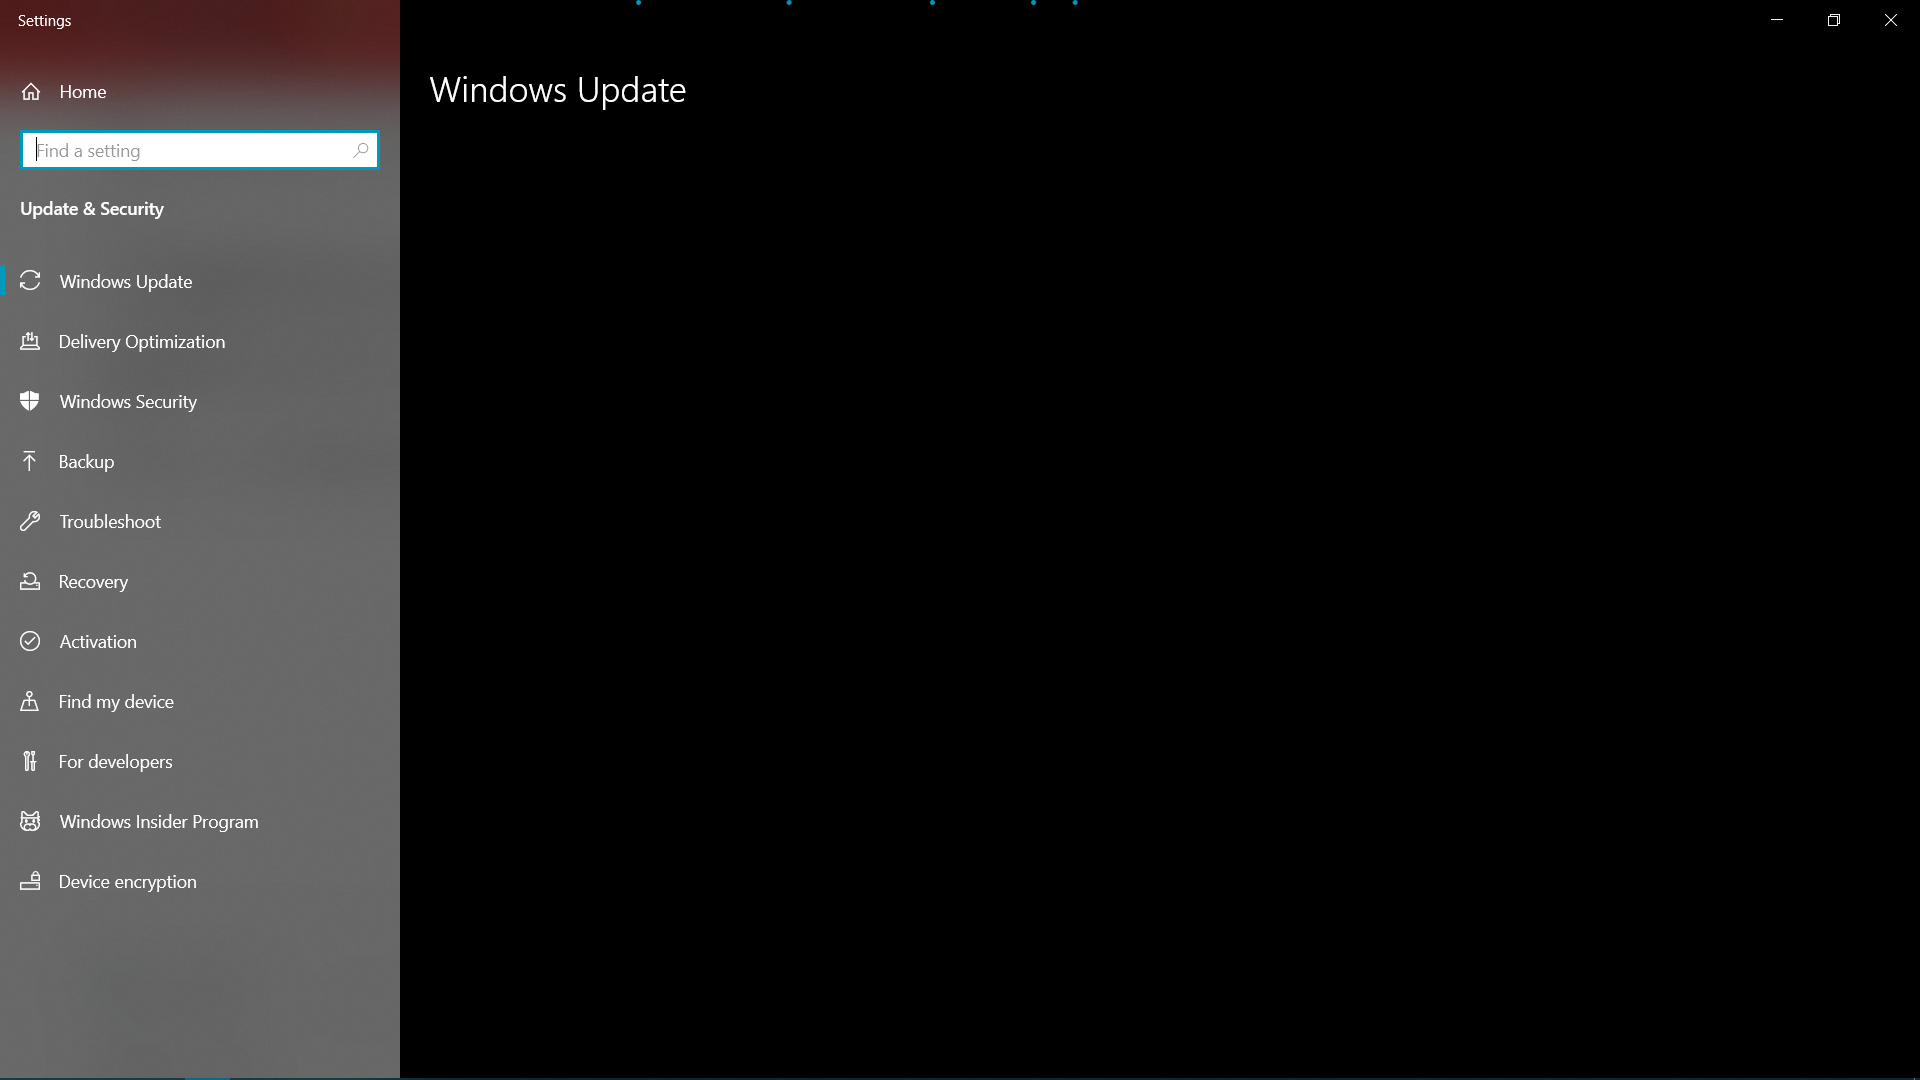 Windows Update Settings Stuck Loading c01ad850-1d8f-43f1-a872-9c64e6336a54?upload=true.png